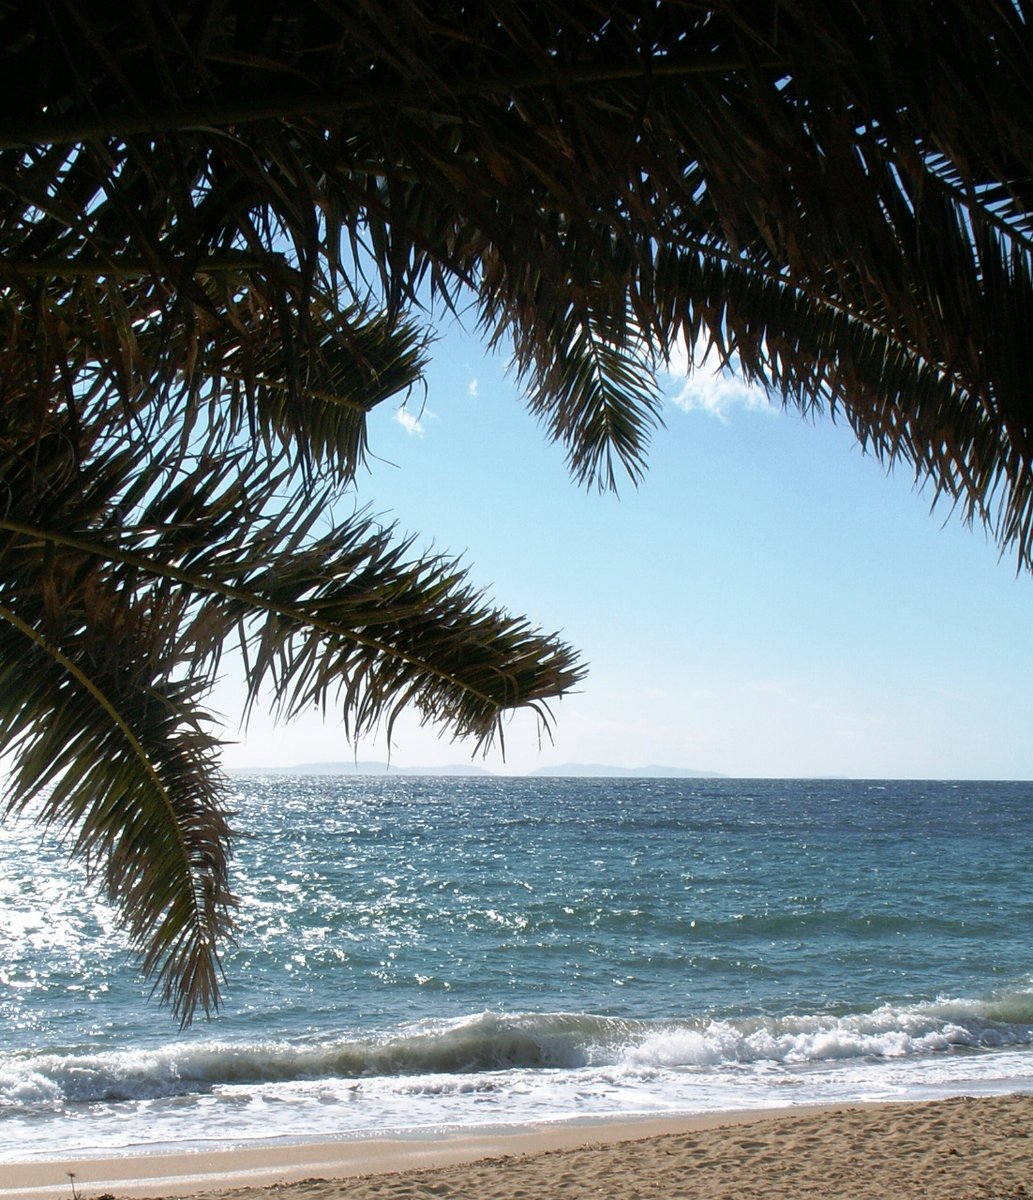 Voici 3 bonnes raisons pour venir à La Croix Valmer pendant les vacances !
Nos diverses plages sauvages 😉 venez les découvrir de plus près 

#lacroixvalmertourisme #lacroixvalmer #golfesttropez #visitvar #frenchriviera #cotedazur #sentierdulittoral